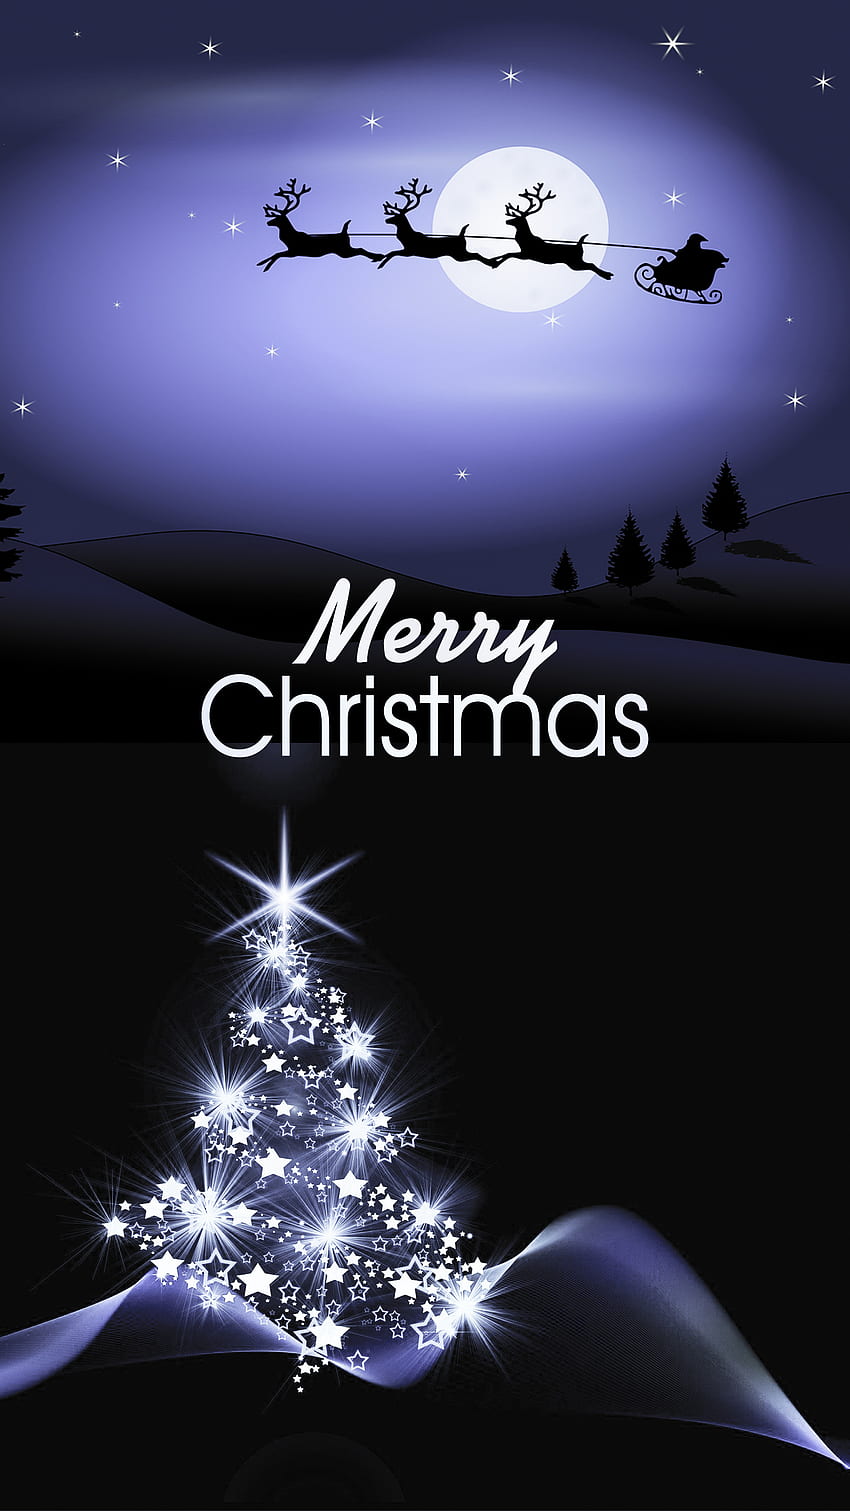 メリー クリスマス、メリー クリスマス サンタ、クリスマス ツリー、夜、アンドロイド、メリー クリスマス、アモルド、月、青、メリー クリスマス、暗い、iphone、メリー クリスマス テキスト、サンタ クロース HD電話の壁紙